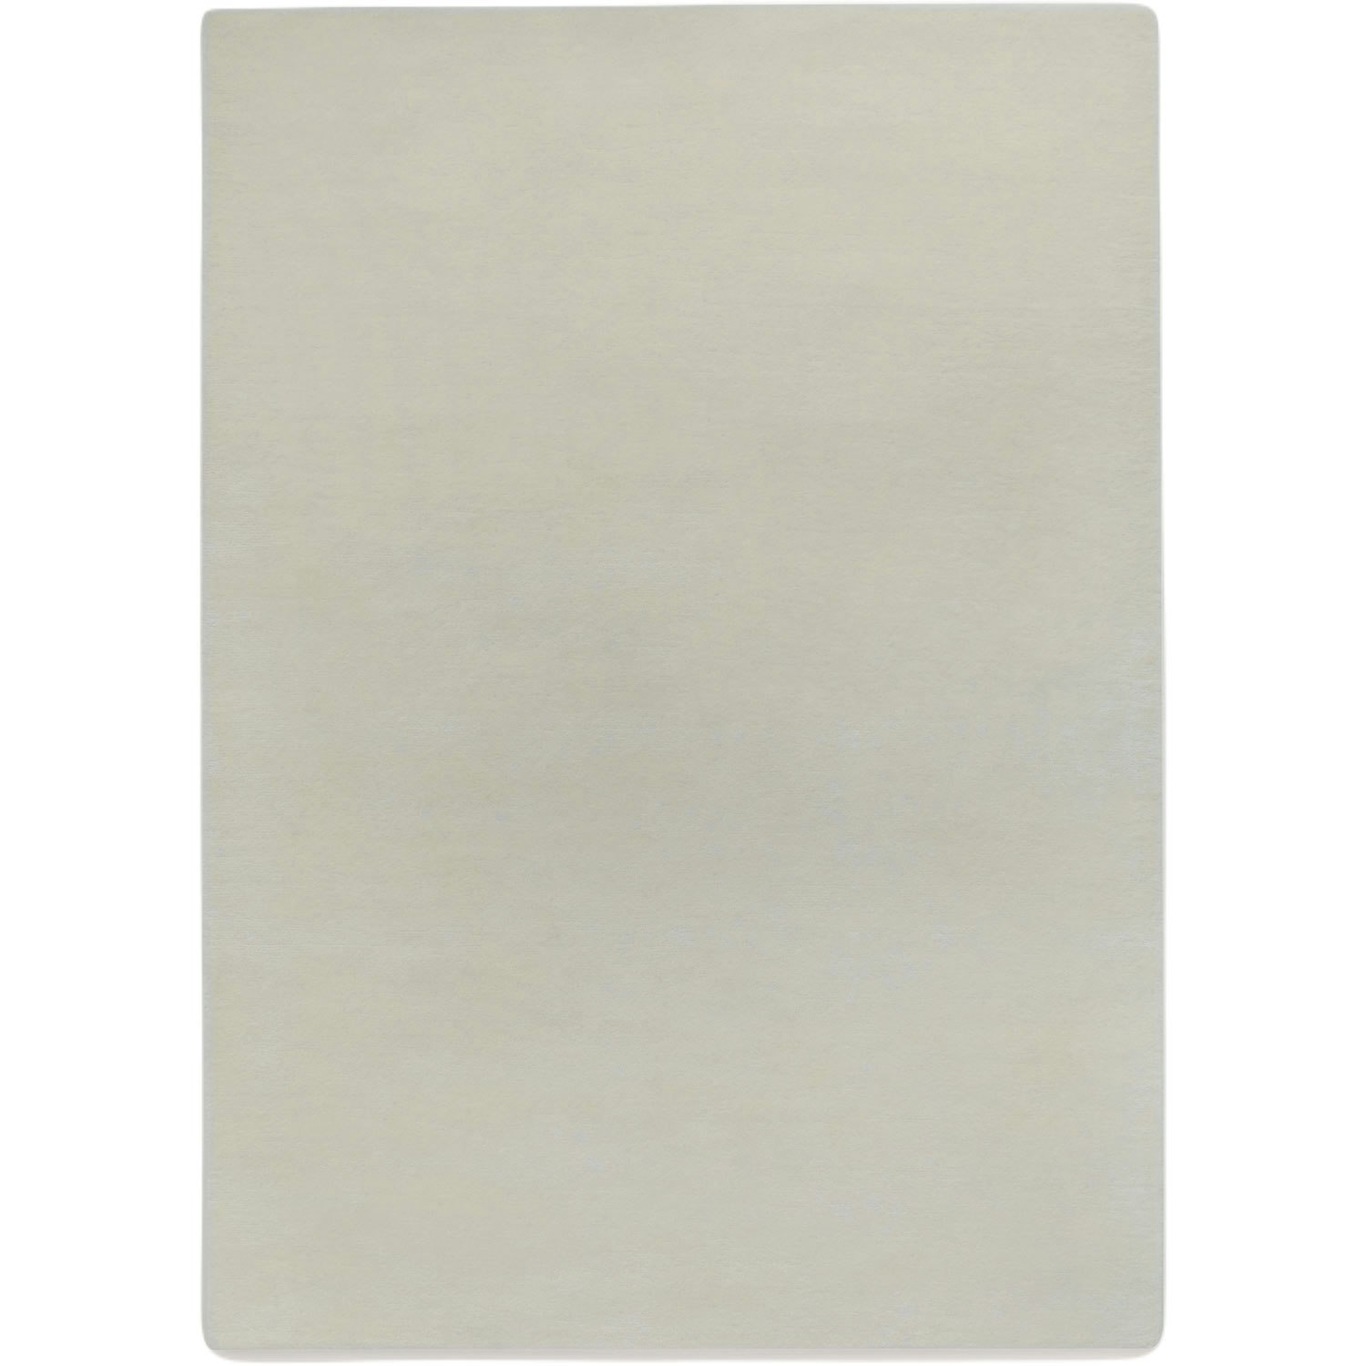 Liljehok Ullmatta Off-white, 170x240 cm